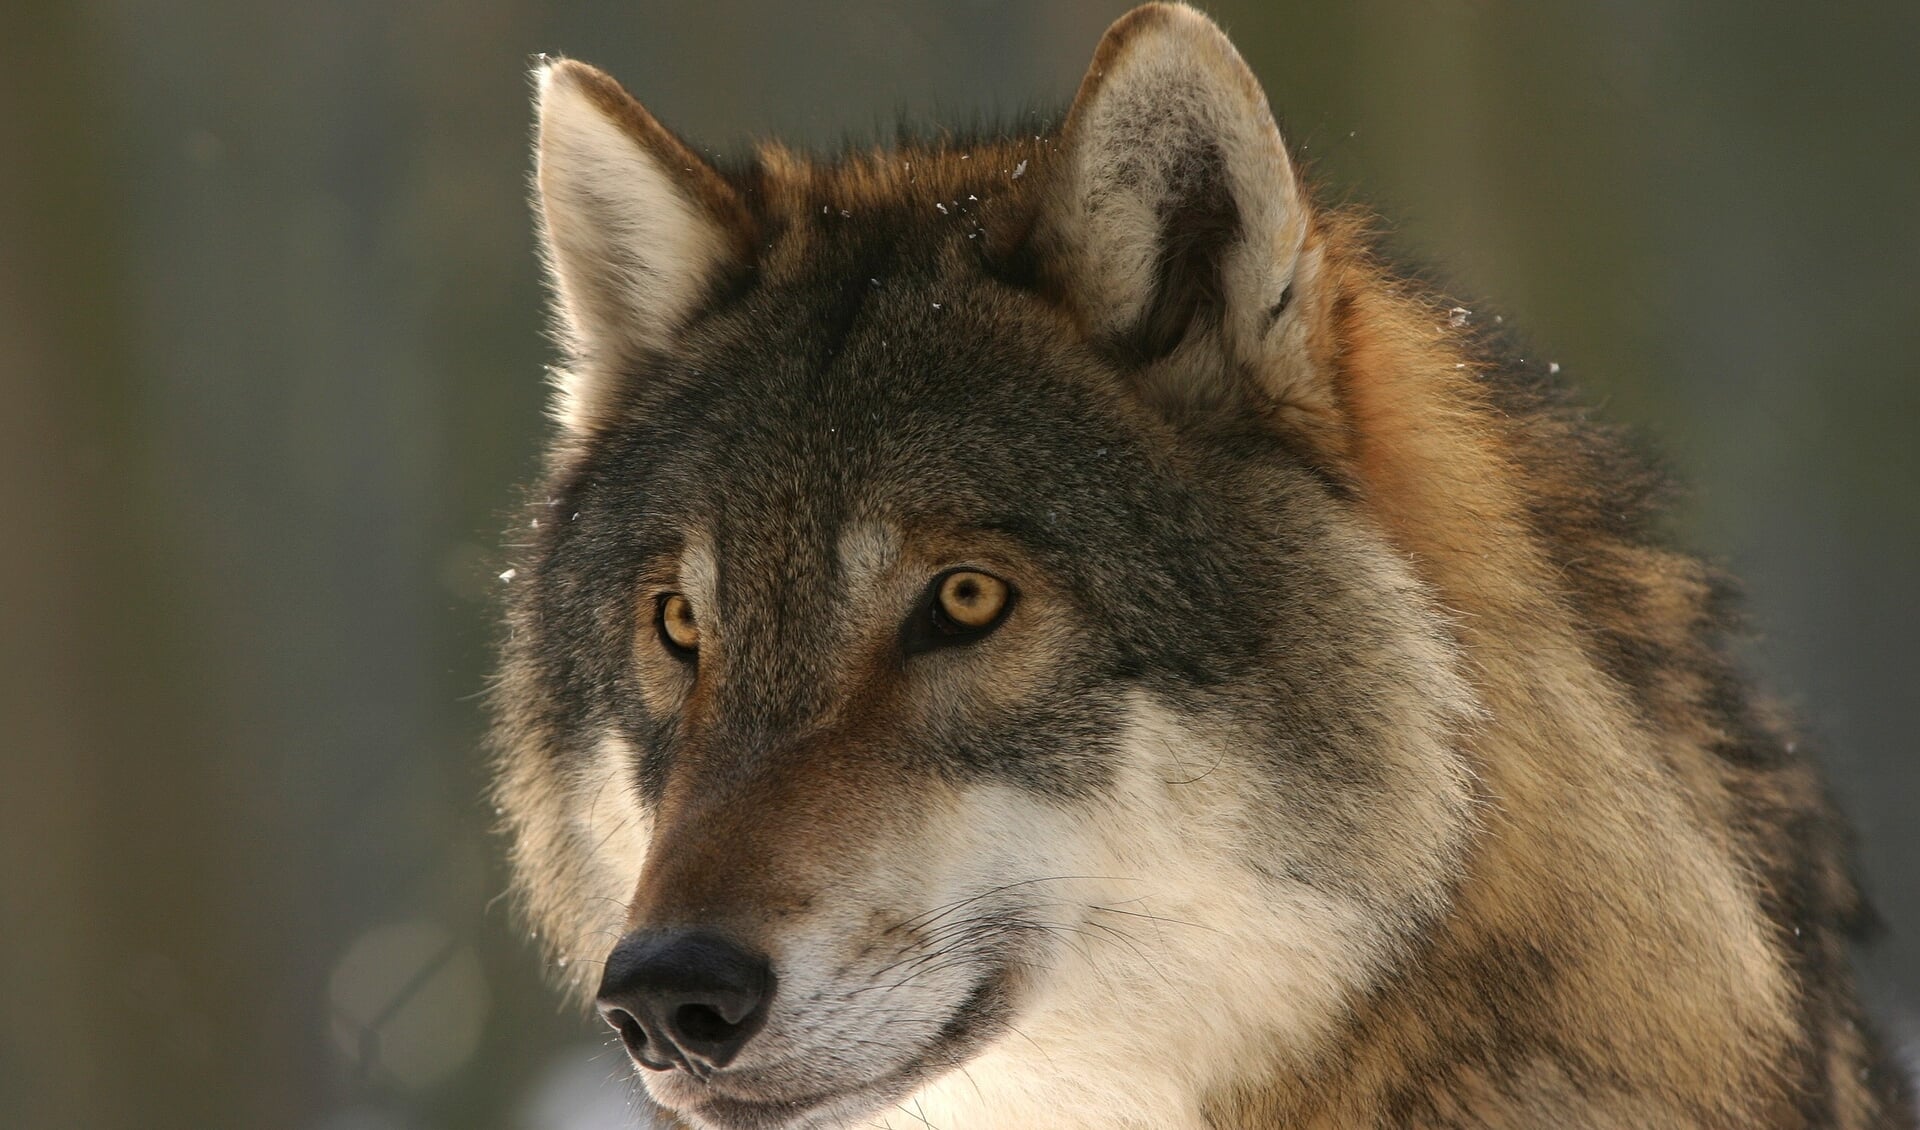 Ook in de provincie Drenthe worden steeds vaker meldingen gedaan van aanvallen door wolven op vee.